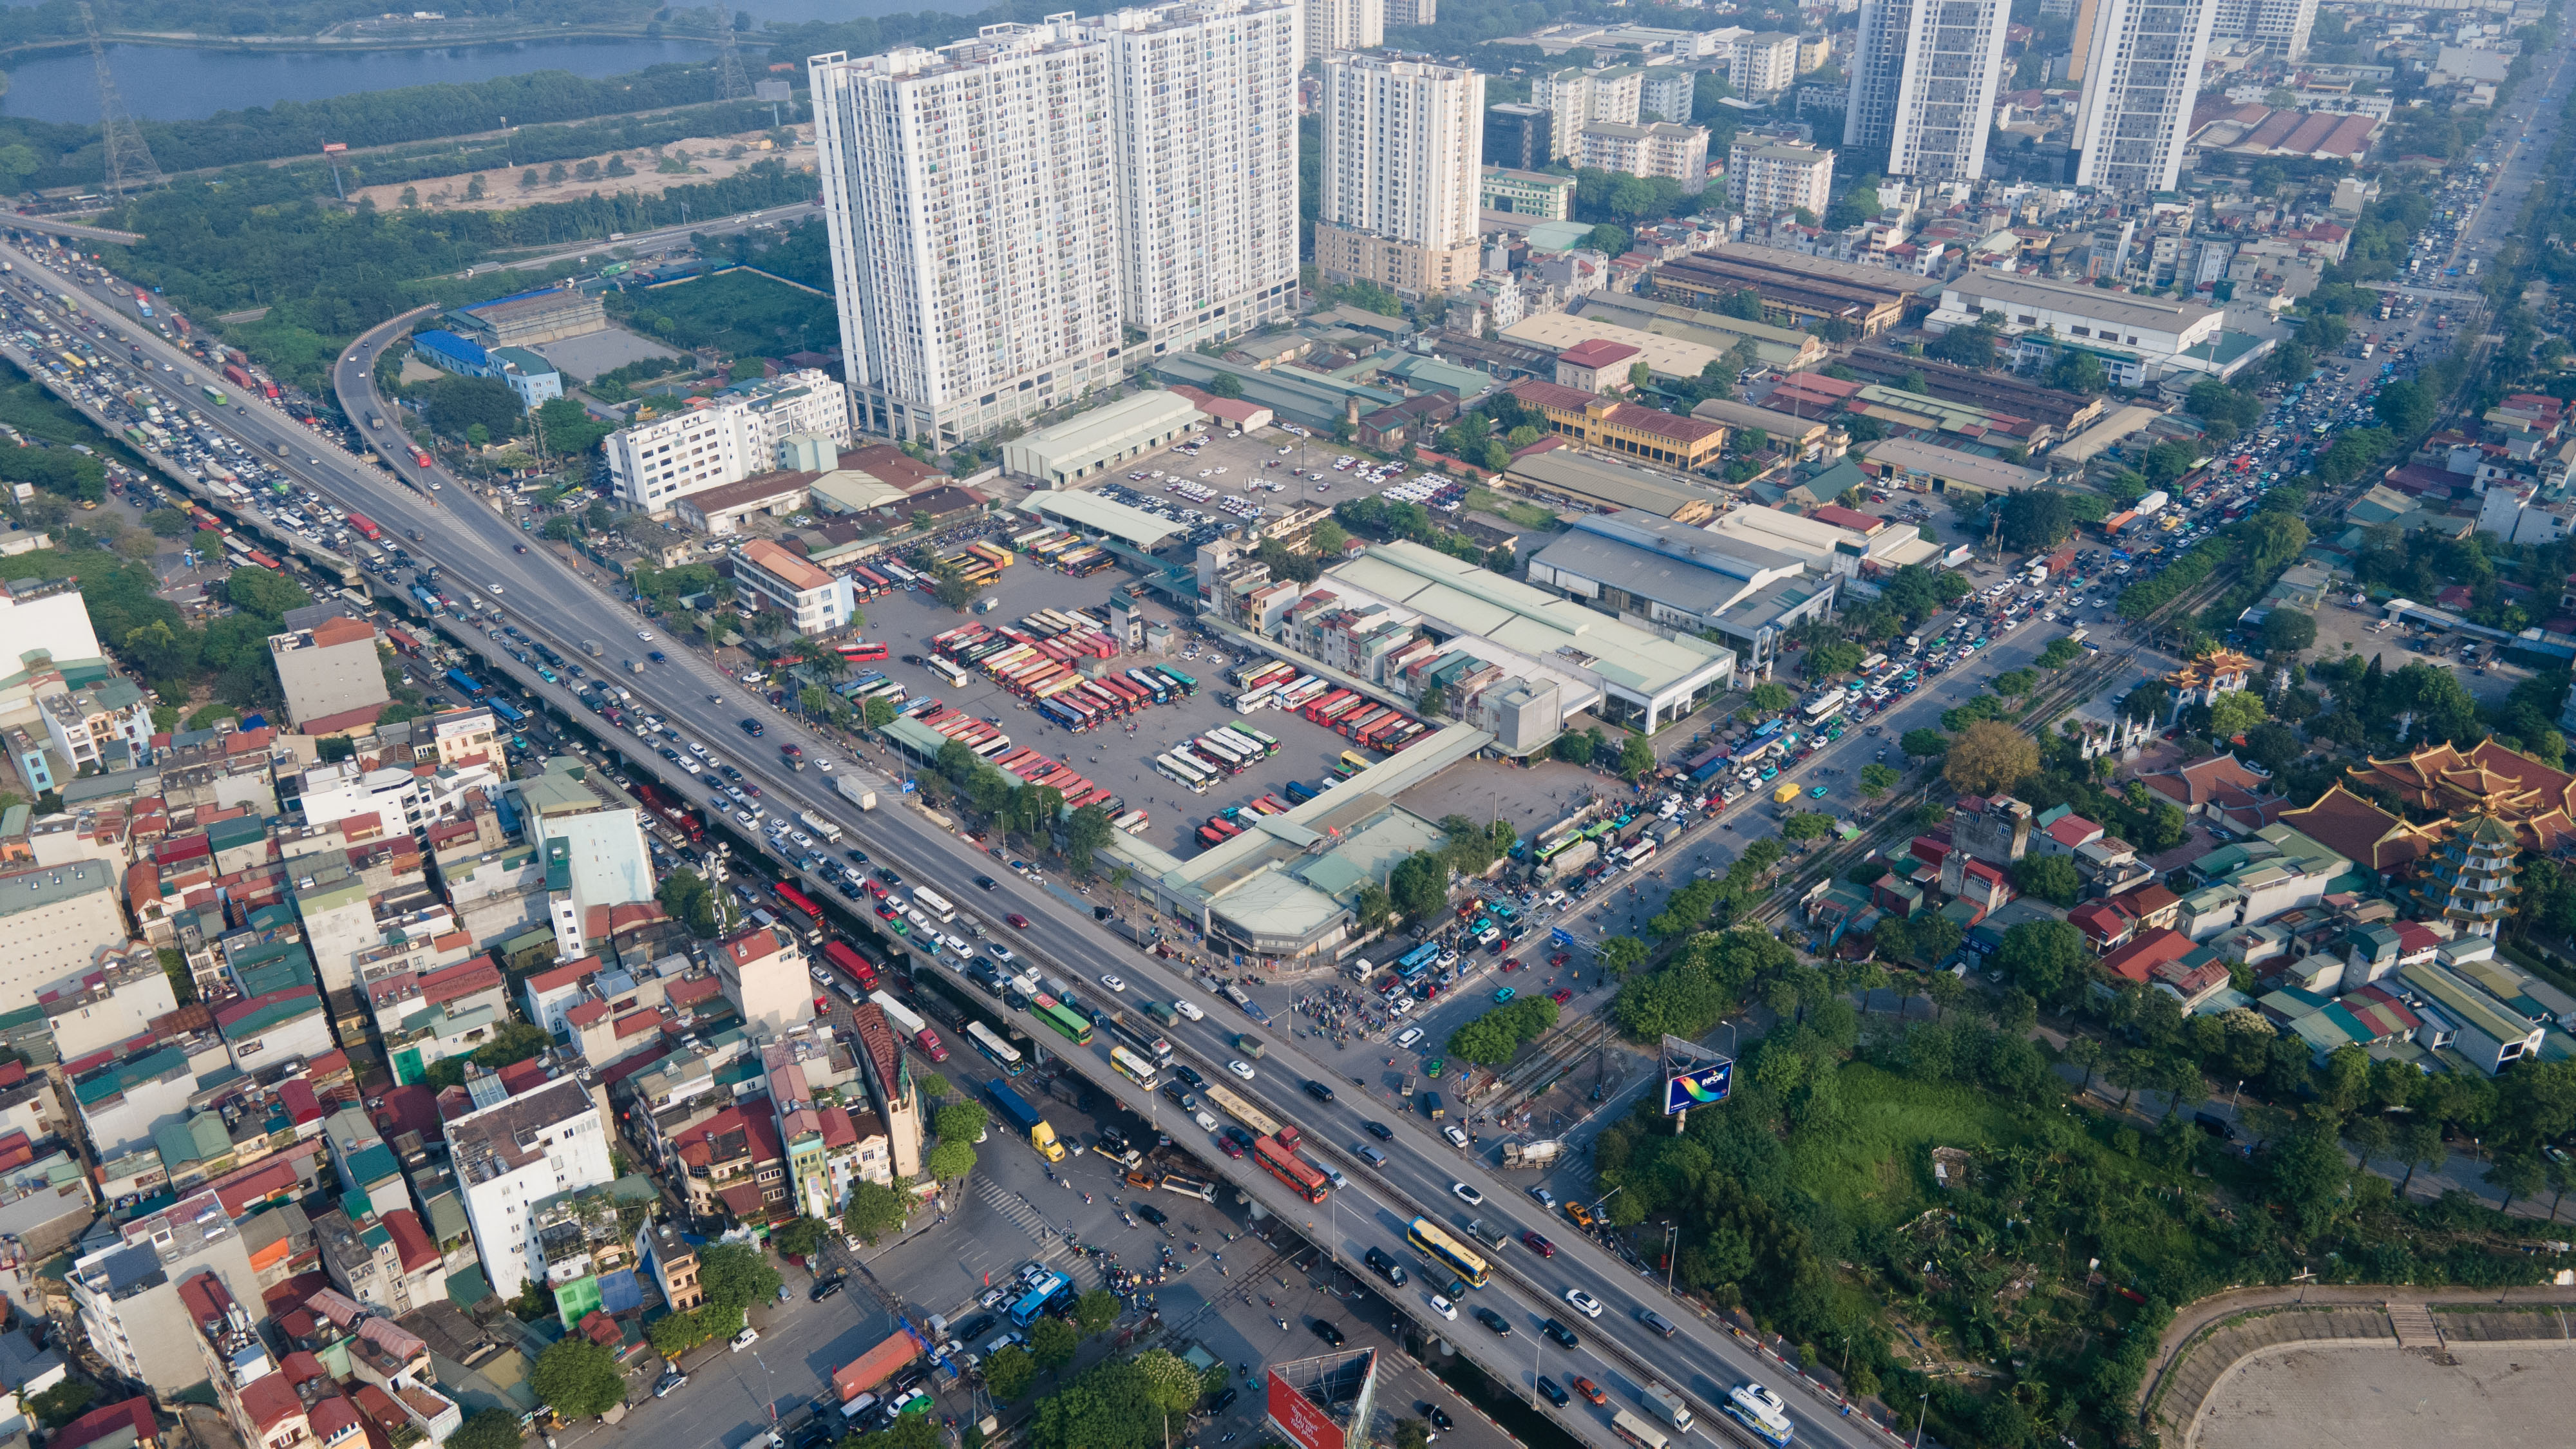 Chiều 26/4, ngày làm việc cuối cùng trước kỳ nghỉ lễ 30/4 – 1/5, nhiều khu vực cửa ngõ Thủ đô Hà Nội ùn tắc kéo dài, các phương tiện di chuyển khó khăn.